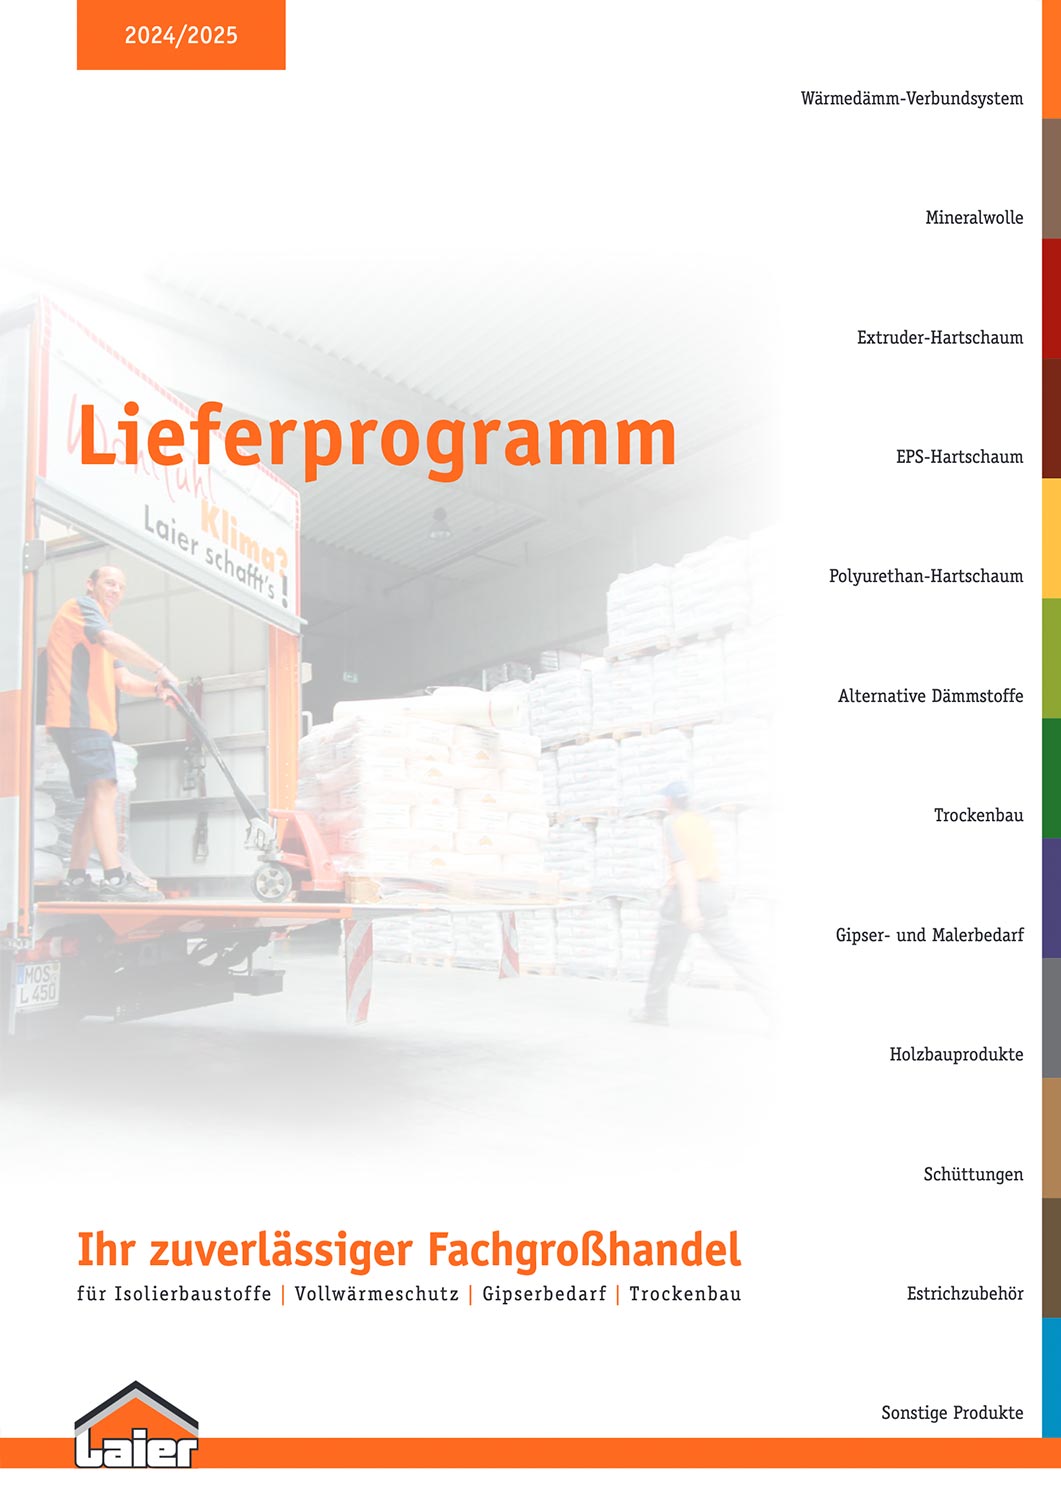 Das Lieferprogramm der Rudolf Laier GmbH & Co. KG